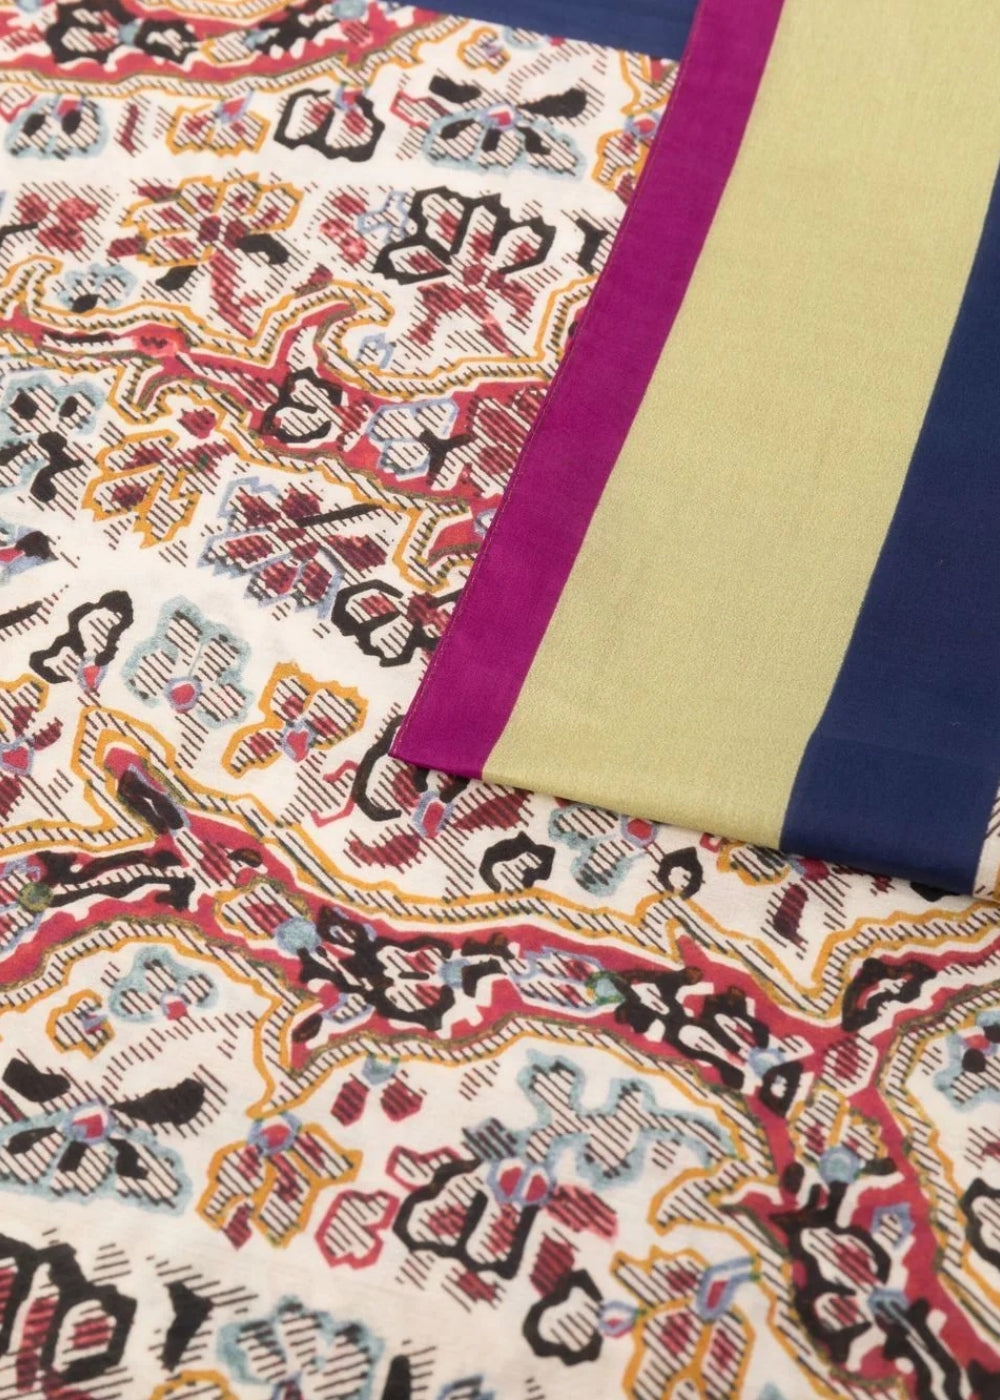 Designer Schal Damen online kaufen. ETRO Schal in leichter Baumwolle mit floralem Print. Exklusiver Damen Schal mit großem Format aus der neuen ETRO Milano Kollektion.